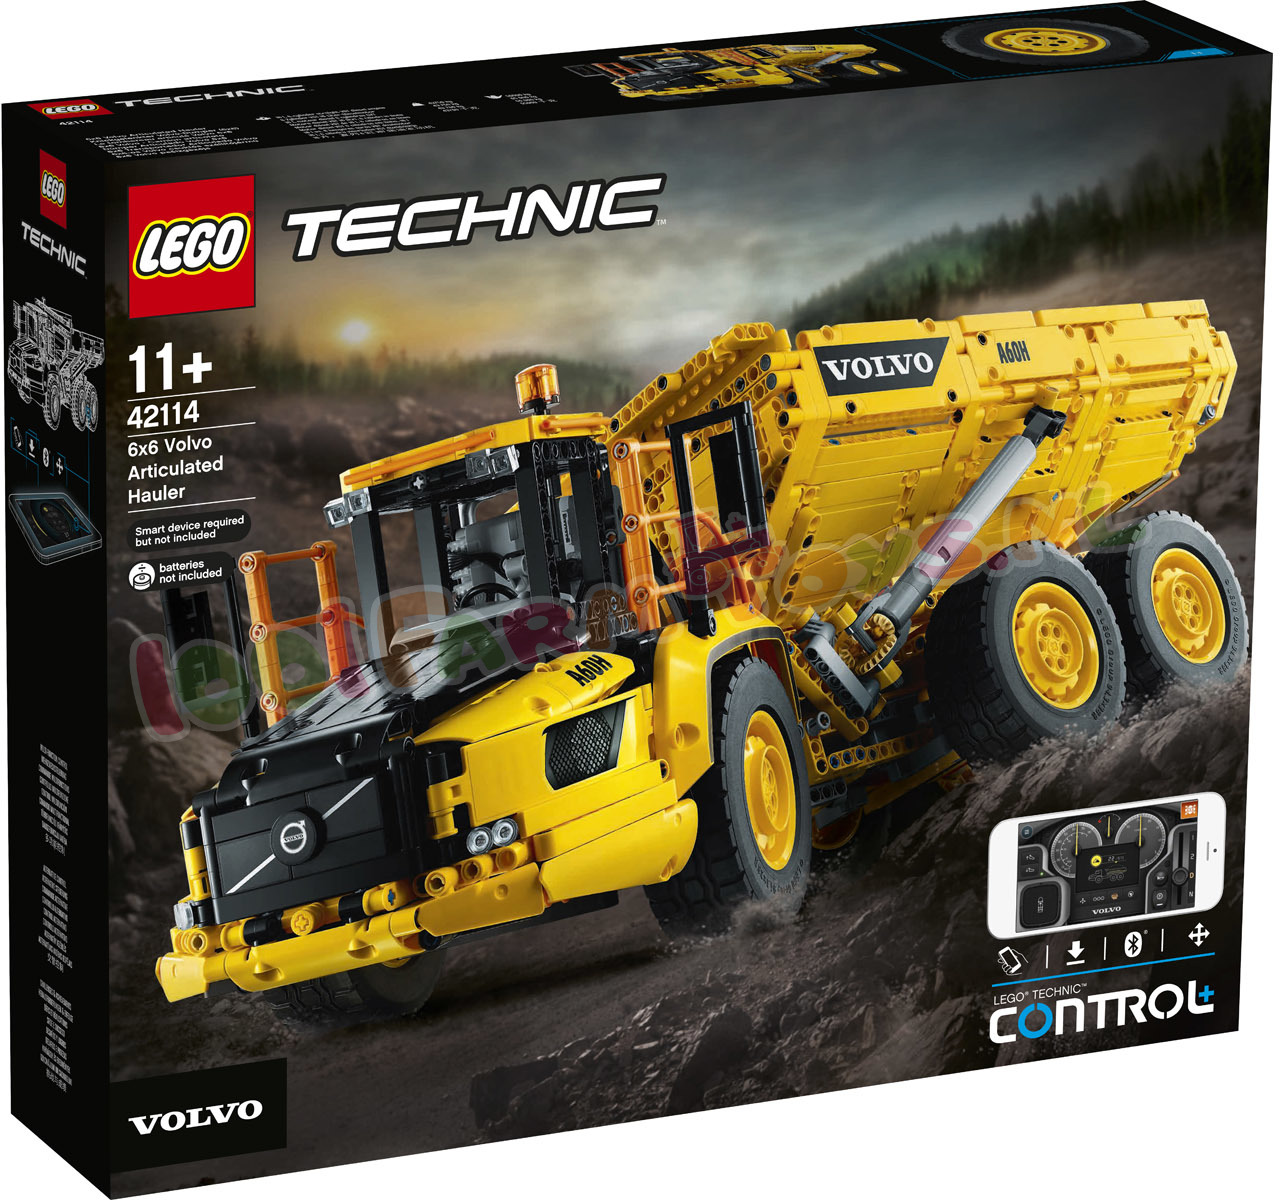 Van toepassing zijn steak Bediende LEGO TECHNIC Volvo 6x6 Truck Kieptrailer - 42114 - LEGO Technic - LEGO -  1001Farmtoys landbouwspeelgoed - LET OP dit product wordt niet meer  geproduceerd